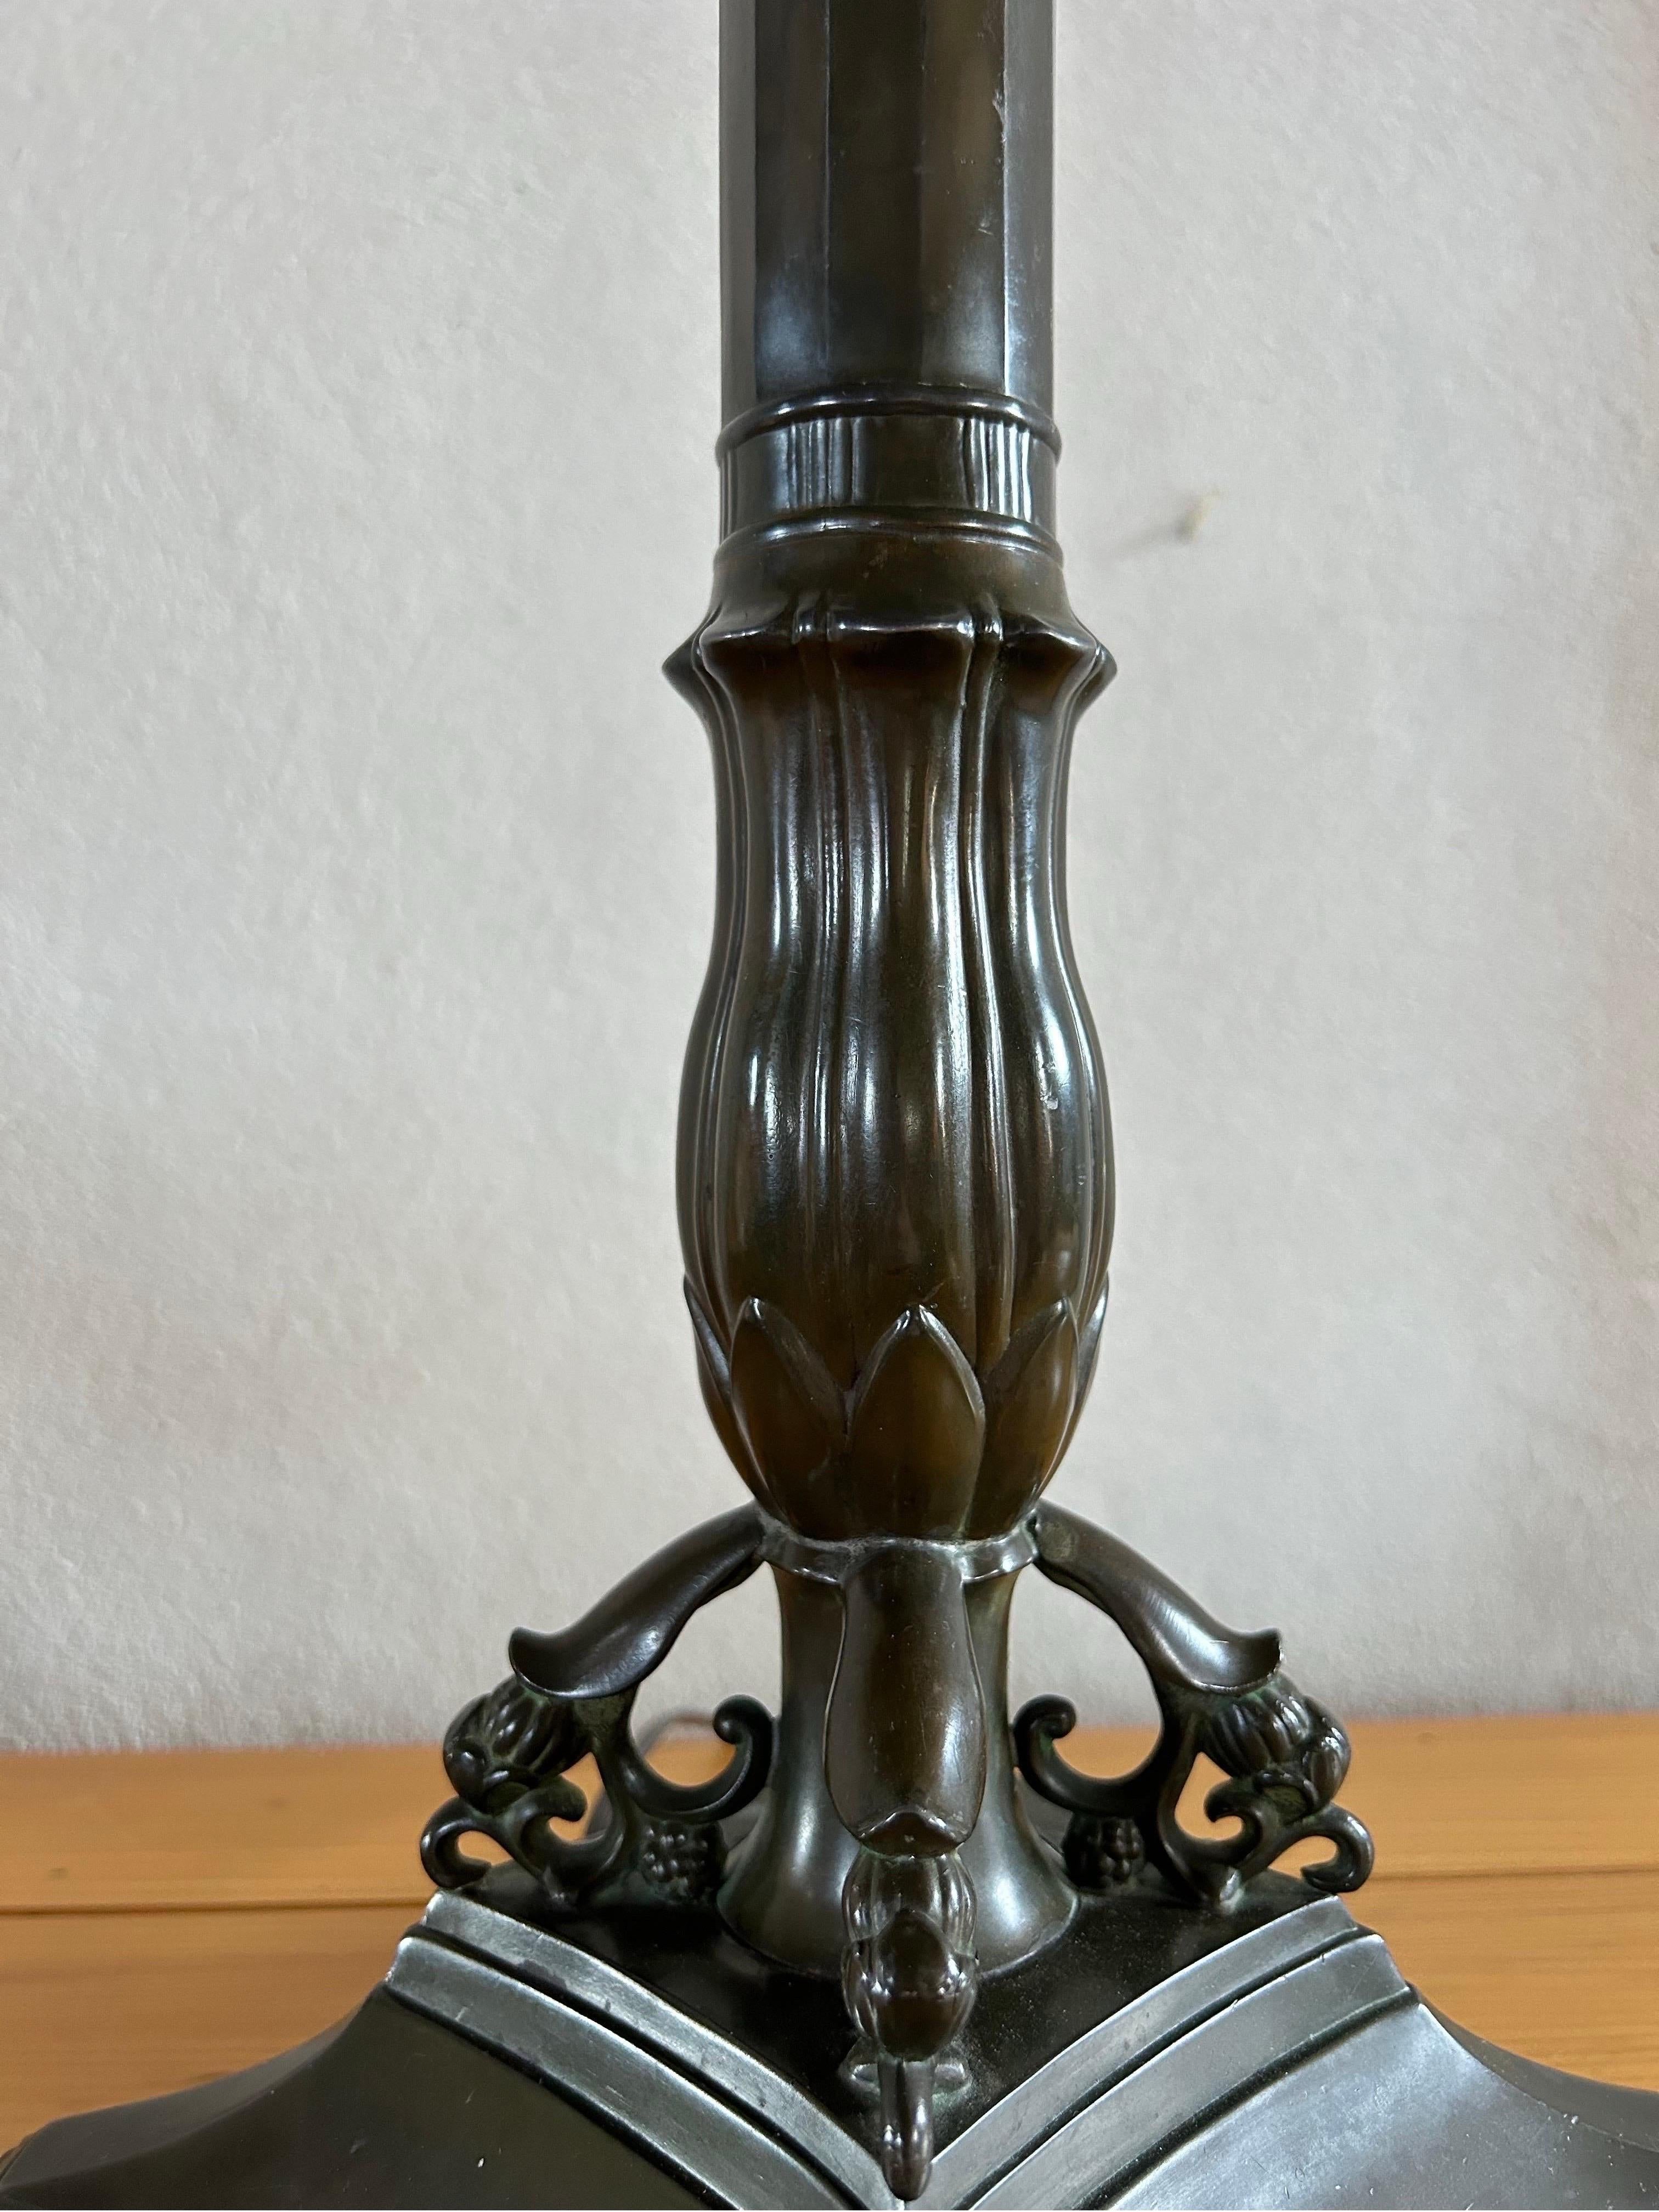 Rare et grande lampe de table en métal Just Andersen Disko, modèle D8. D'une hauteur impressionnante de 72 cm (sans l'abat-jour), cette lampe témoigne de l'élégance et de la sophistication du design danois des années 1920.

Fabriquée au Danemark par